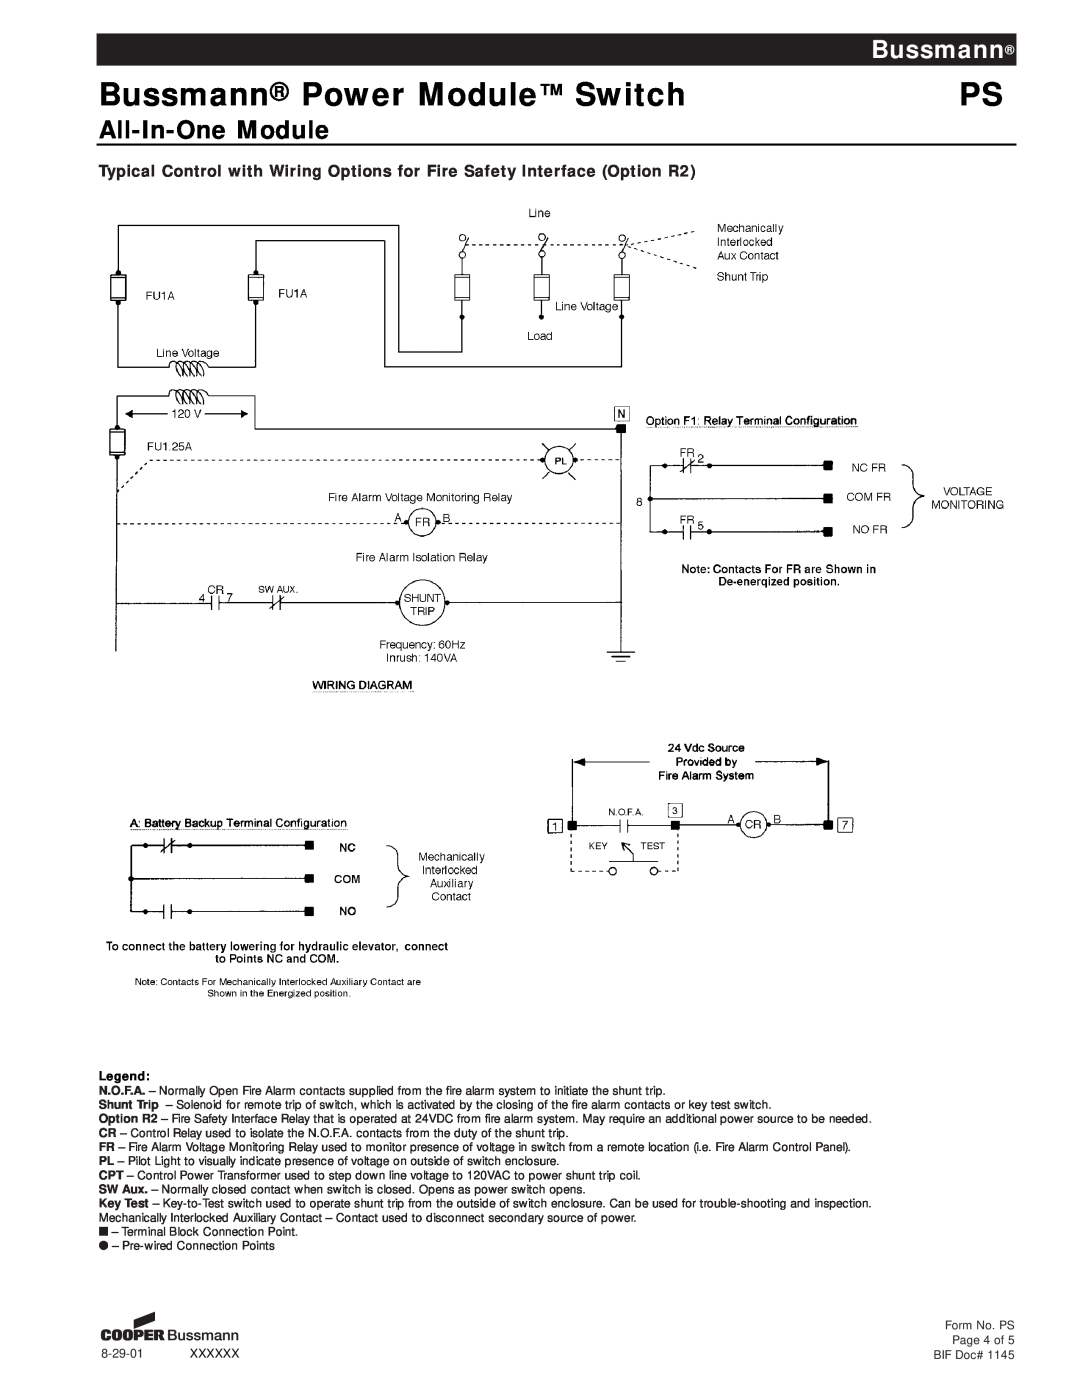 Cooper Bussmann PS manual Bussmann Power Module Switch, All-In-OneModule, 8-29-01XXXXXX 